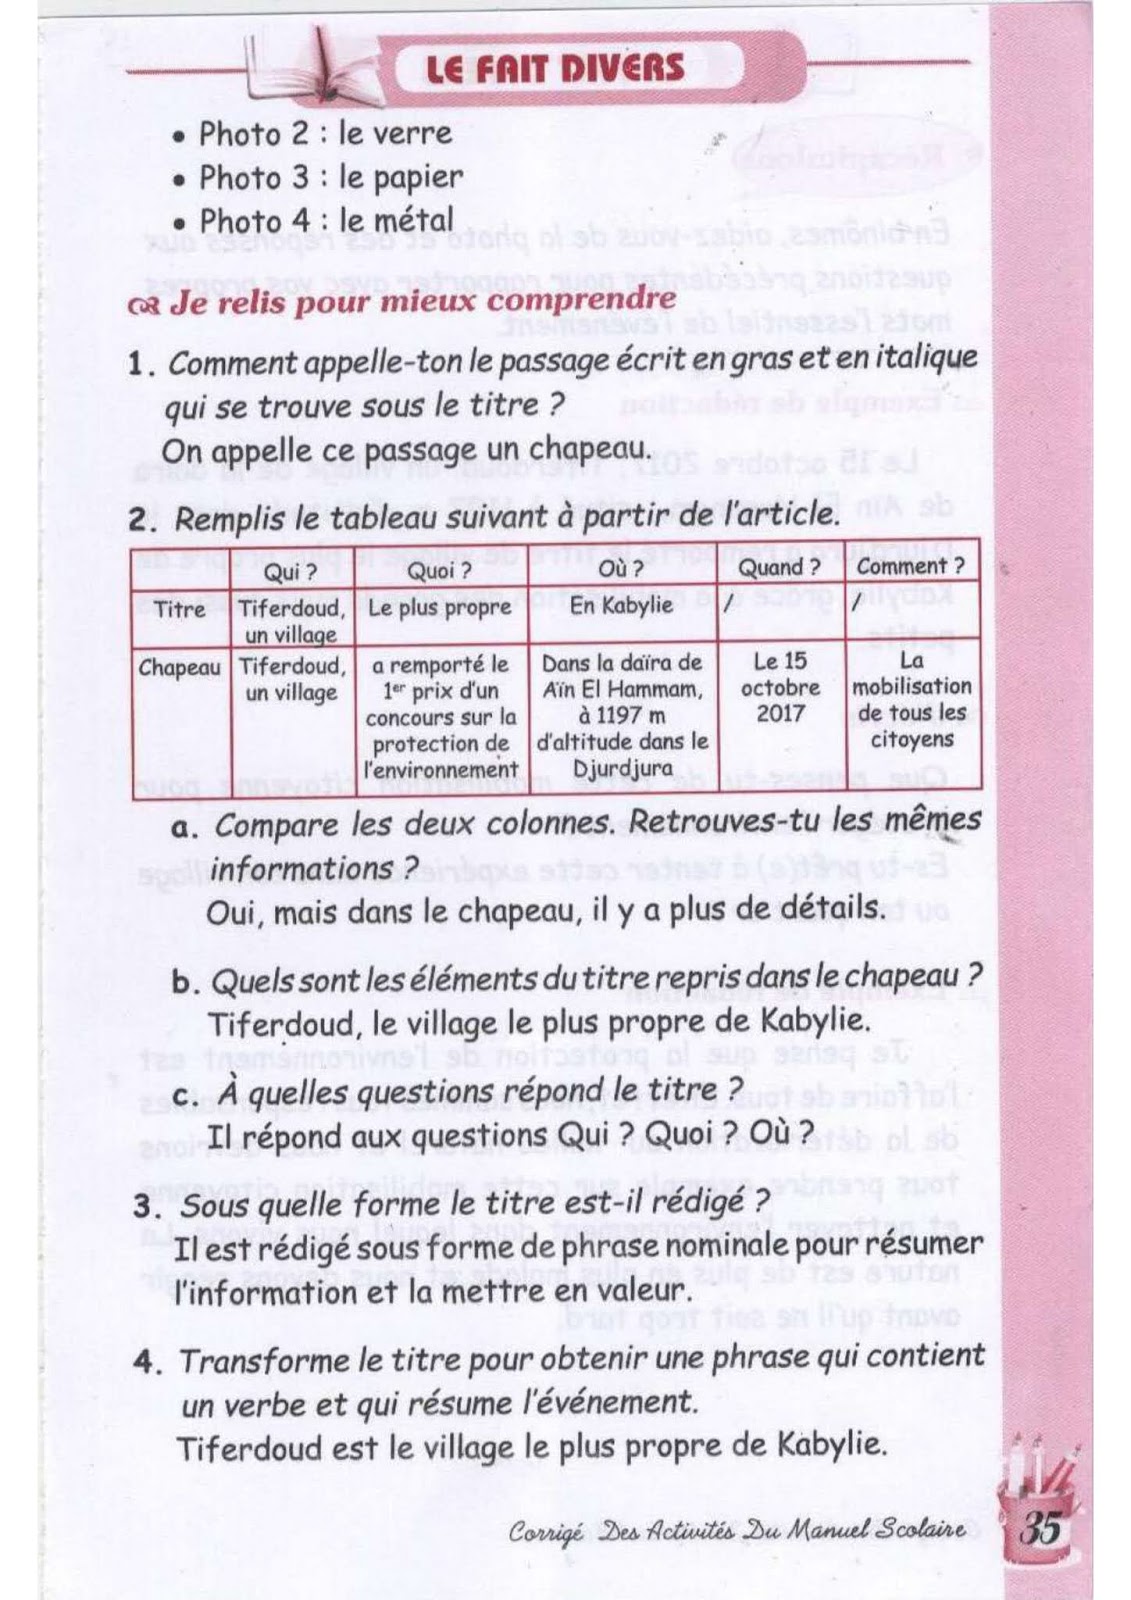 حل تمارين صفحة 36 الفرنسية للسنة الثالثة متوسط - الجيل الثاني